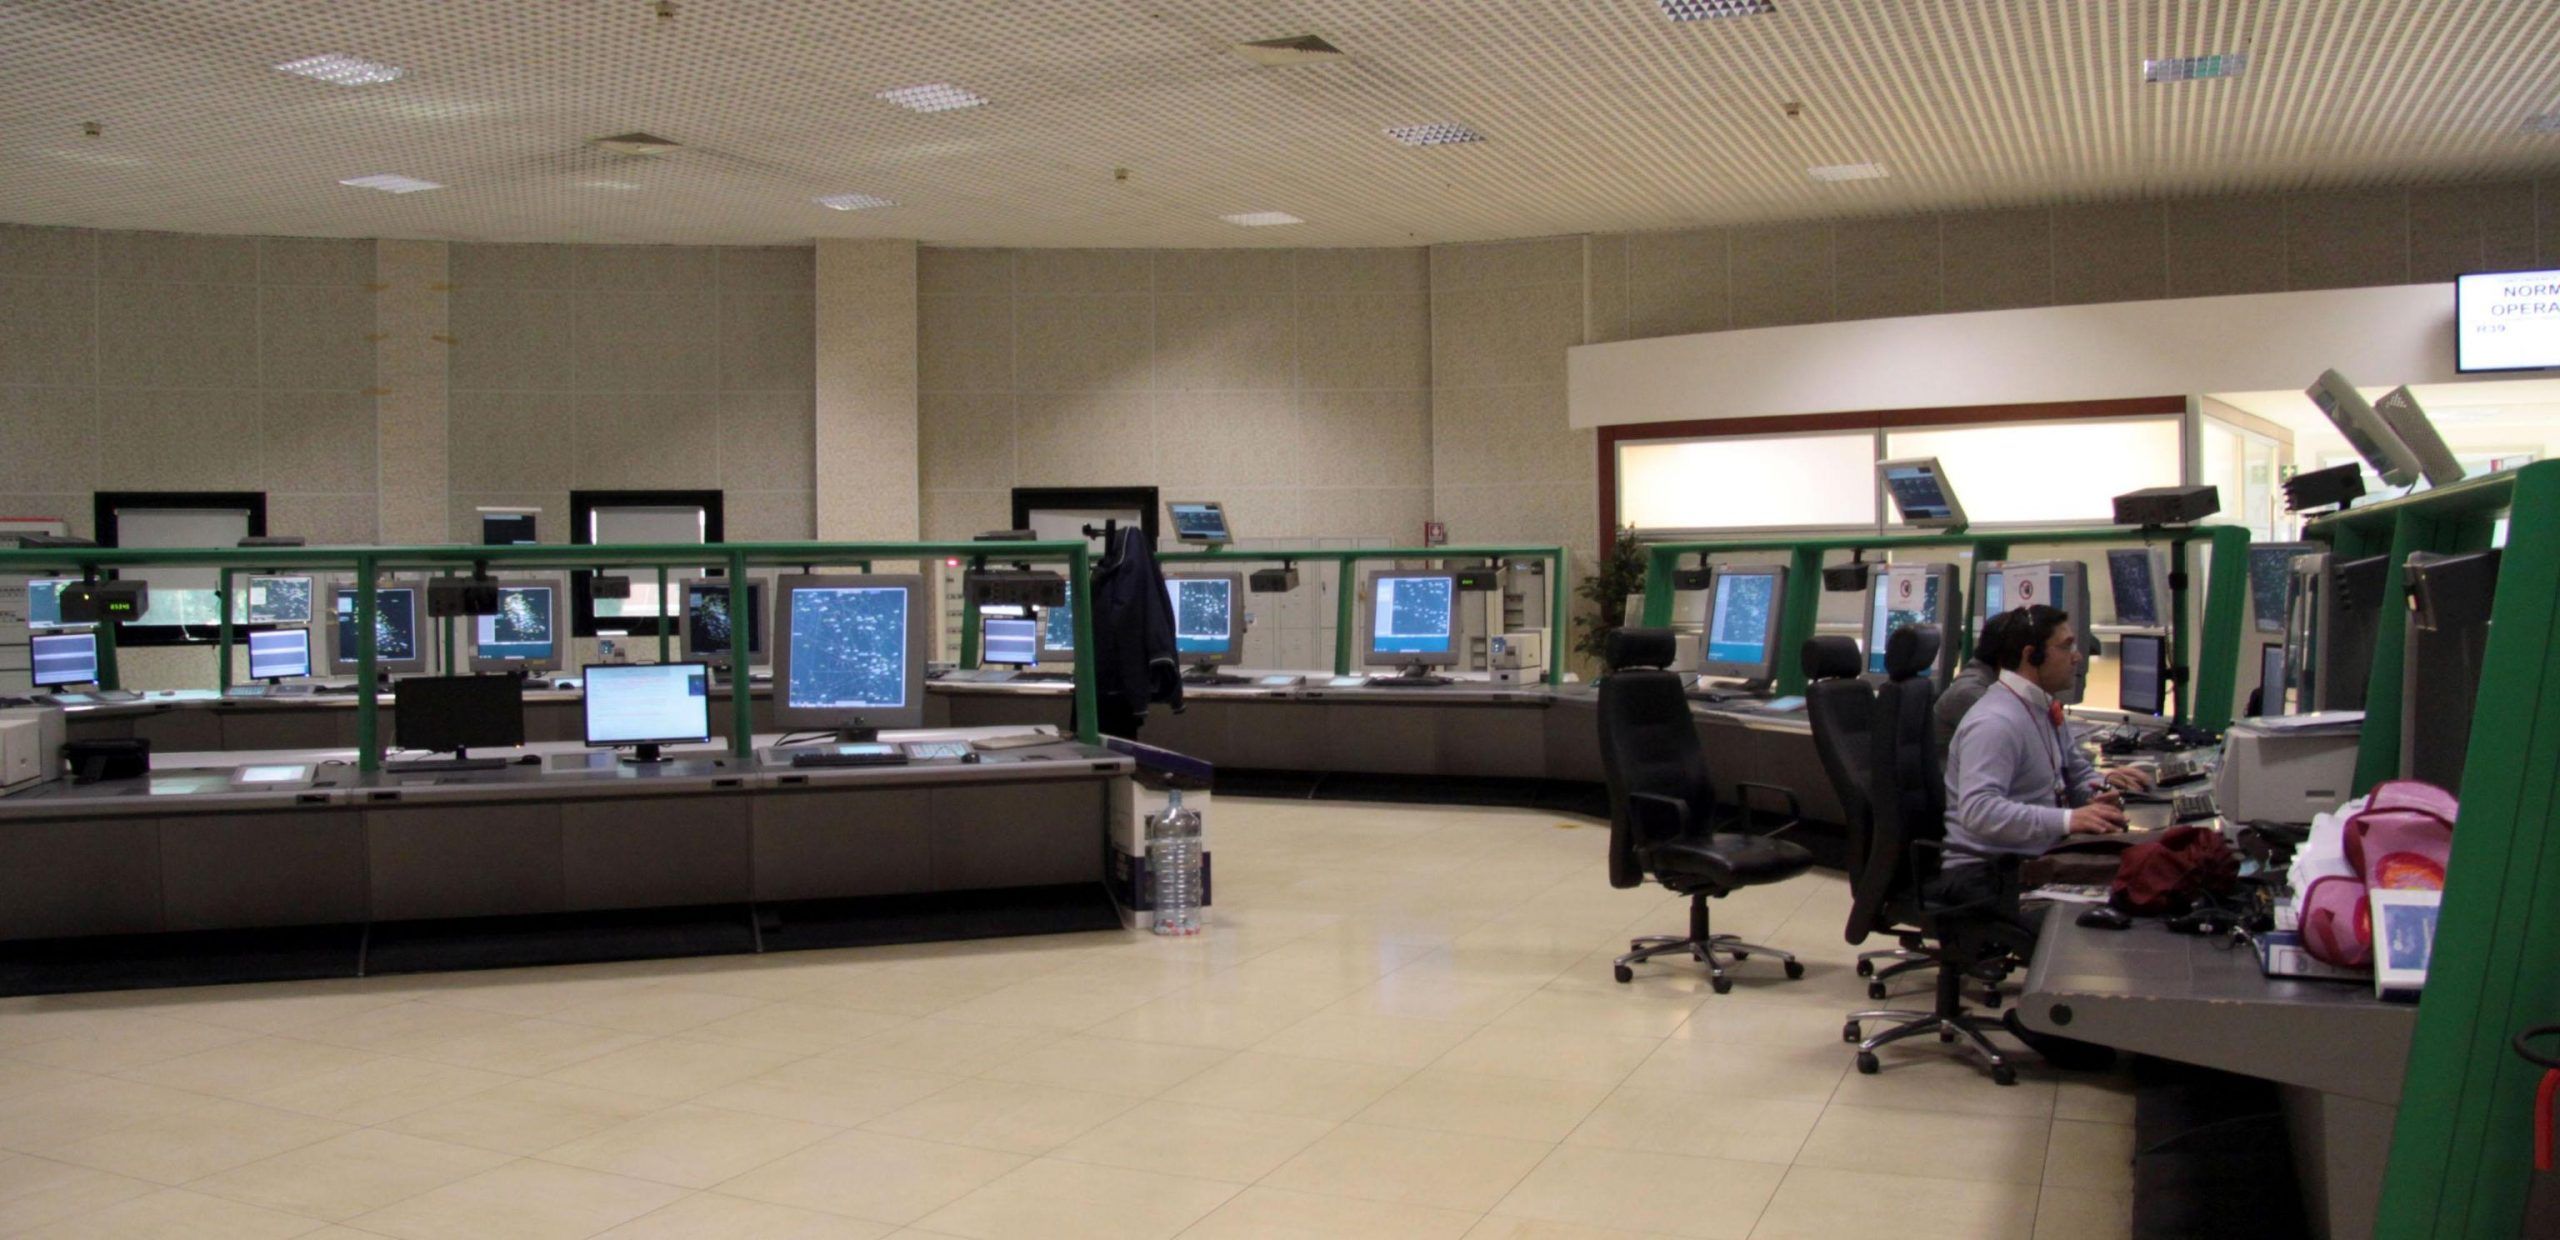 Allarme bomba all’aeroporto di Ciampino: passeggeri evacuati, voli senza variazioni